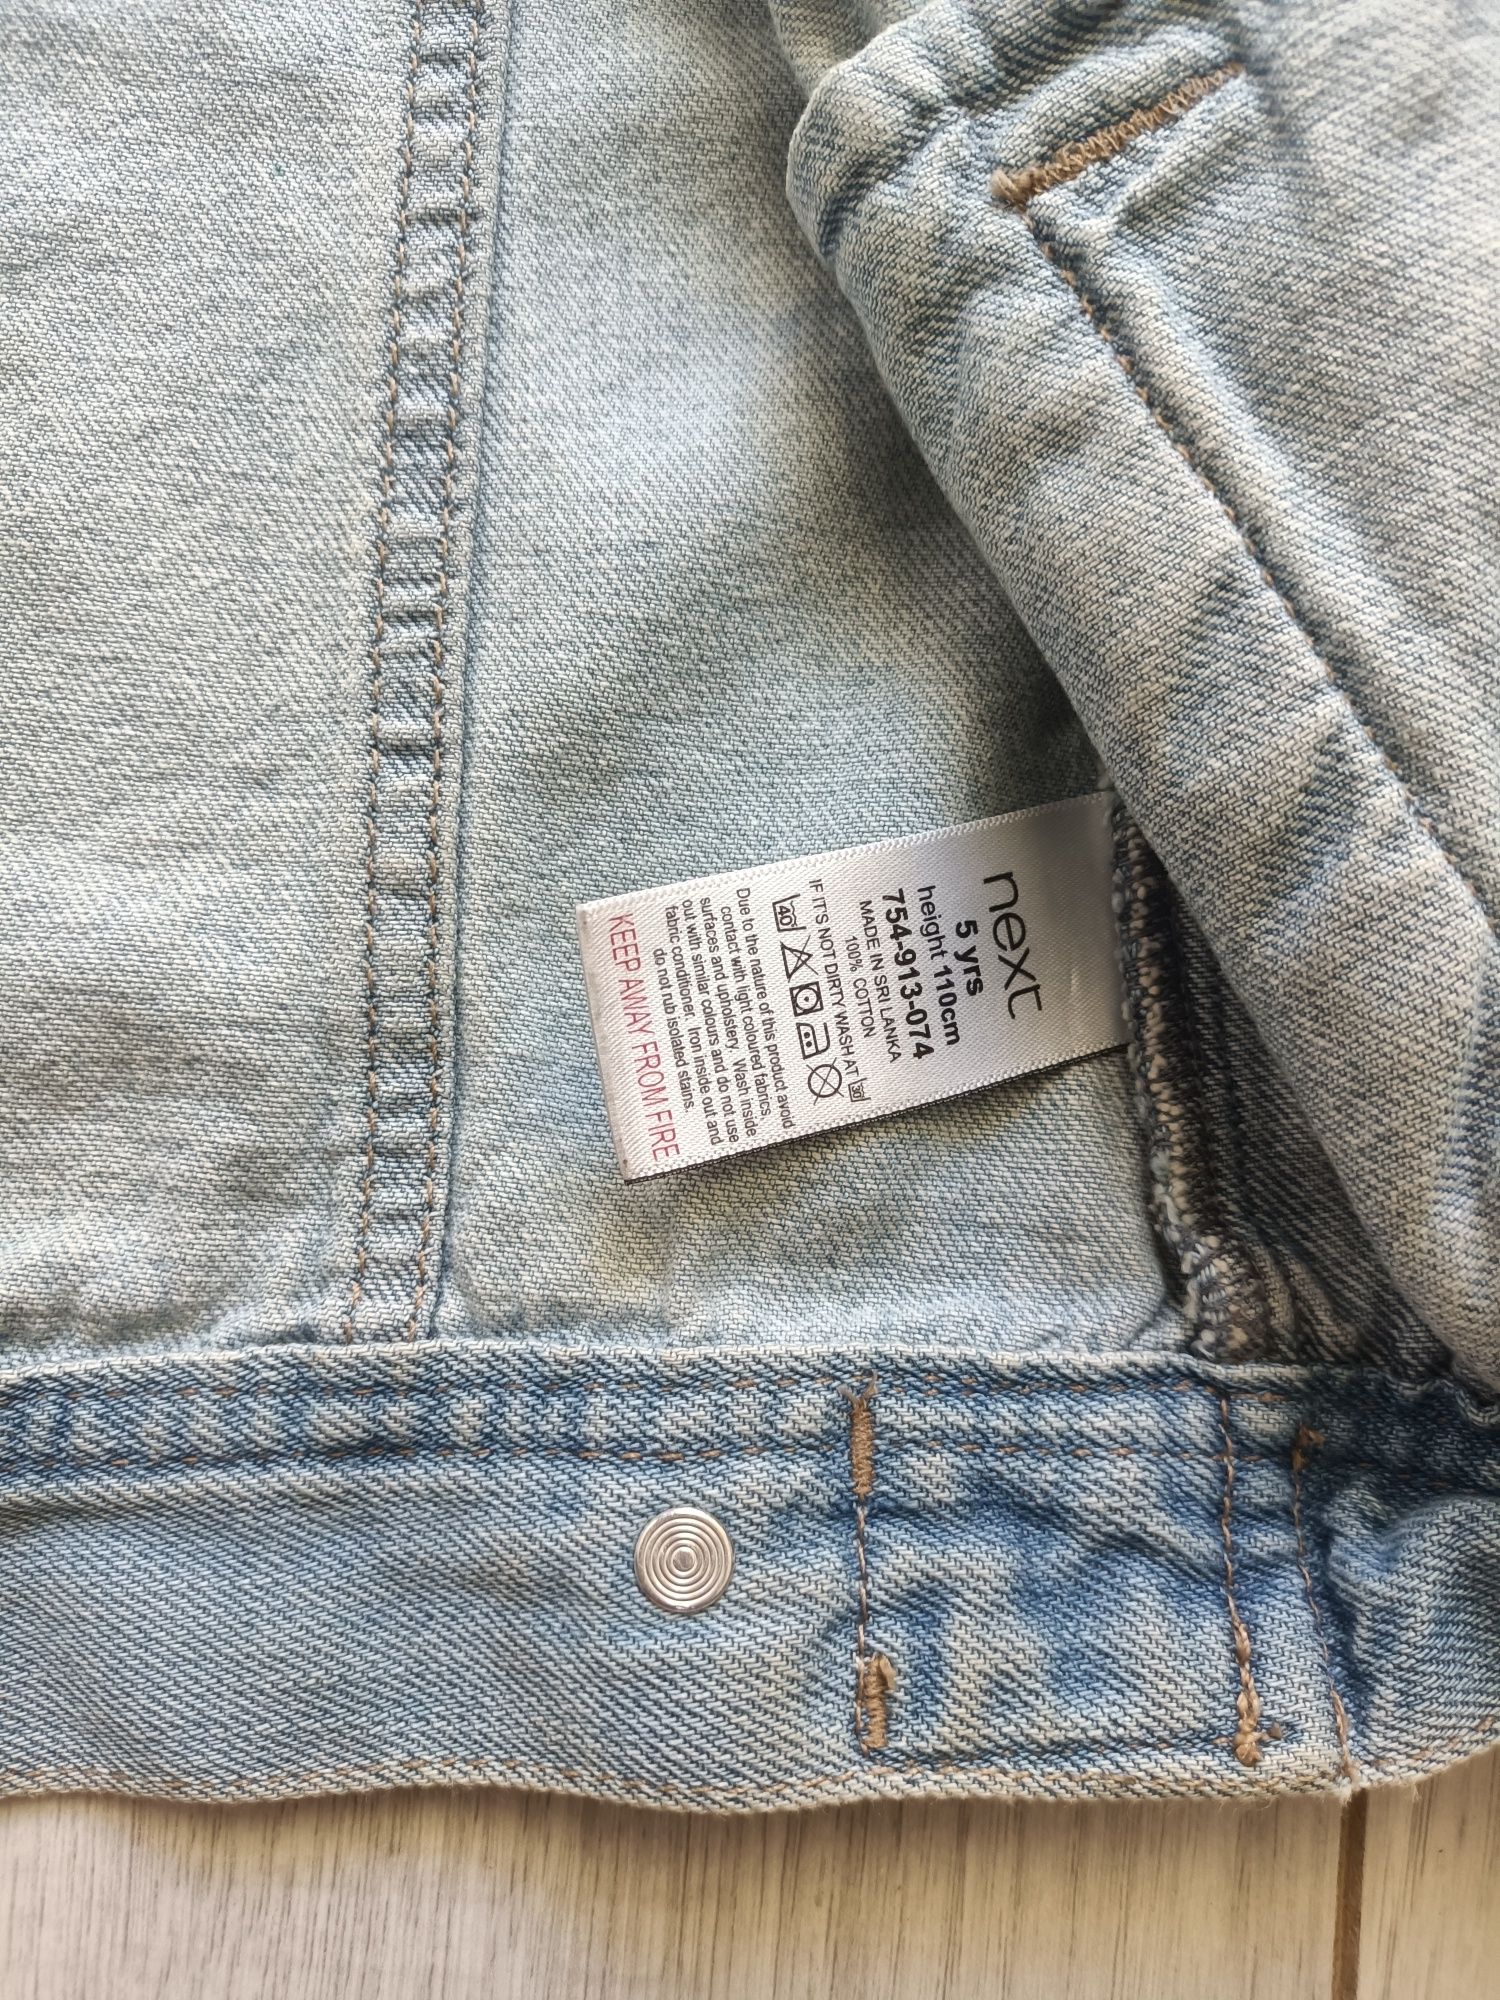 Katana kurtka jeansowa Next 110cm naszywki nadruki rock kieszenie